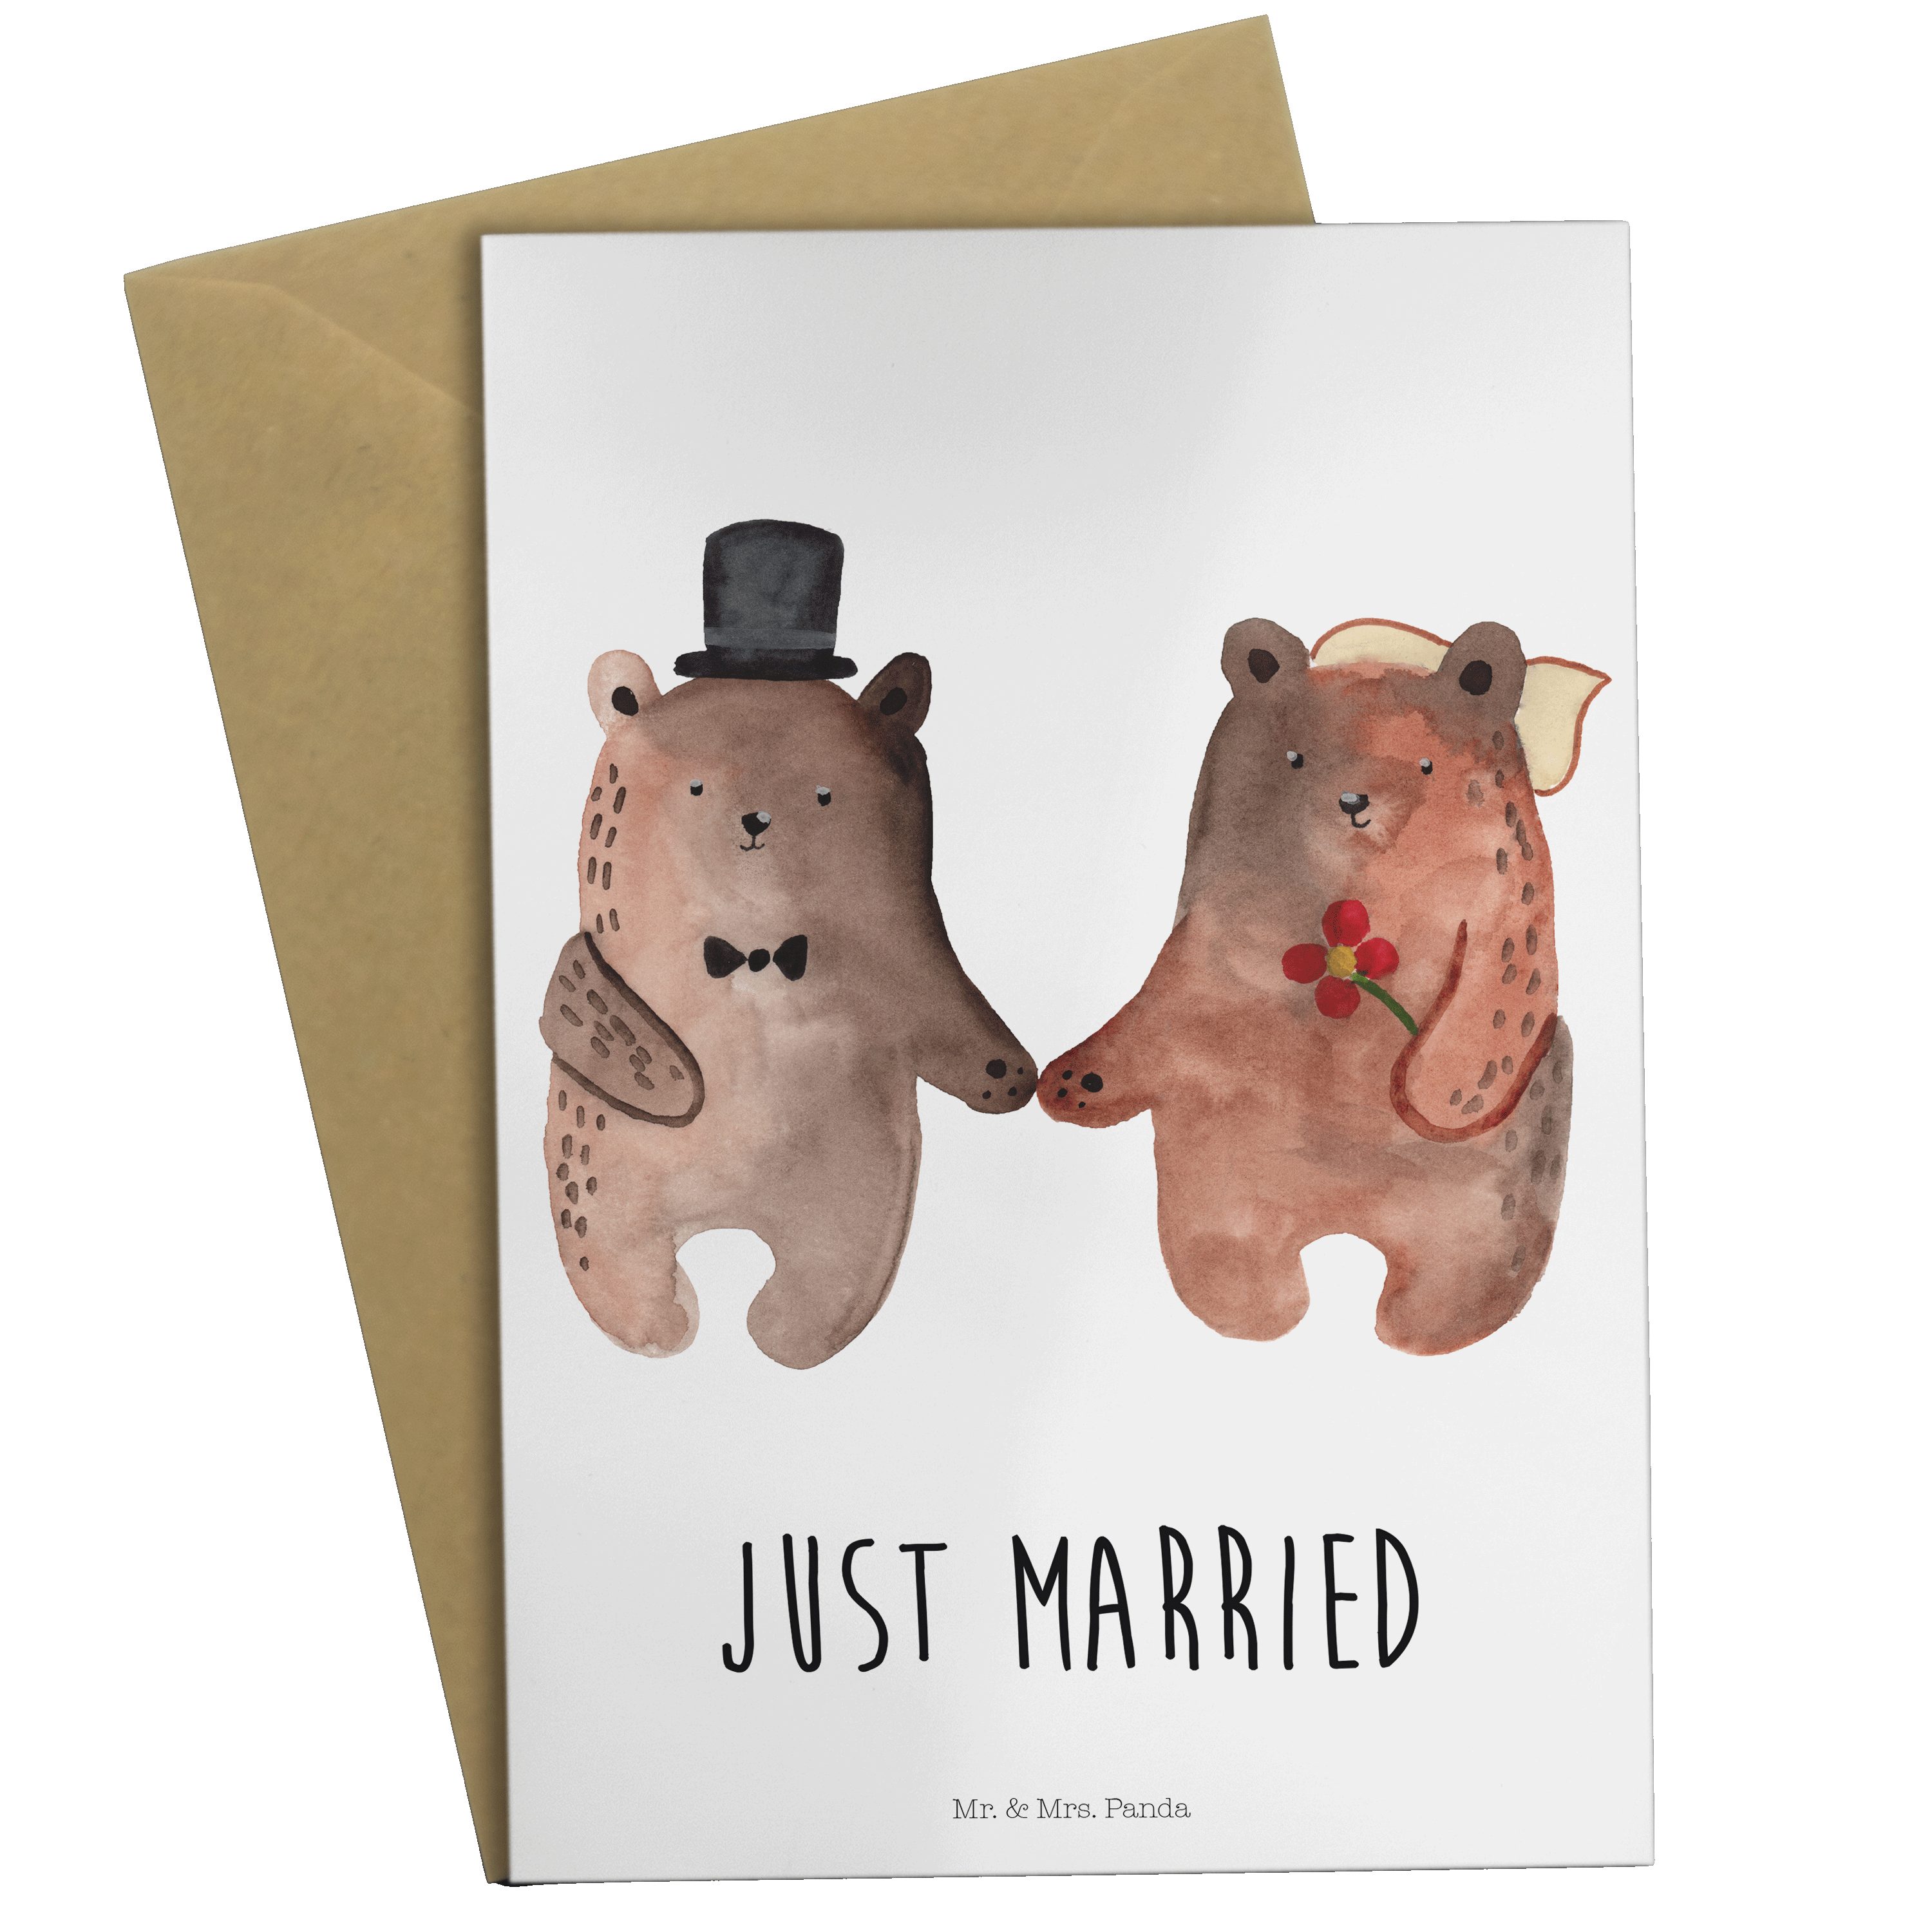 Mr. & Mrs. Heirat - - Weiß Bär Hochzeit Verheiratet Bär Heirate Grußkarte Geschenk, Heirat Panda